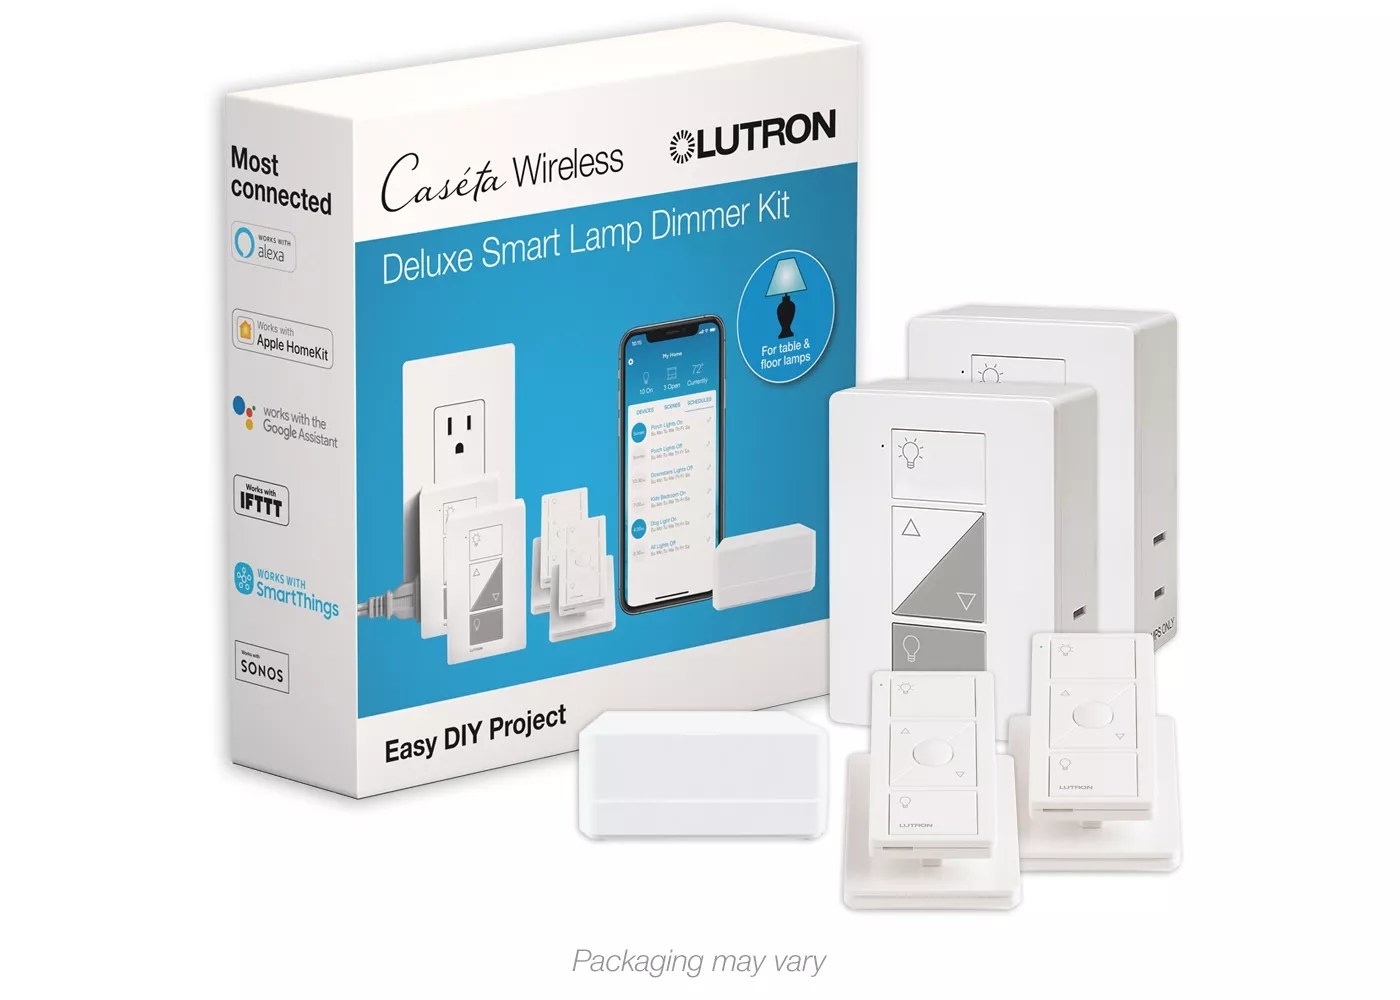 The Lutron Caseta wireless deluxe smart lamp dimmer kit